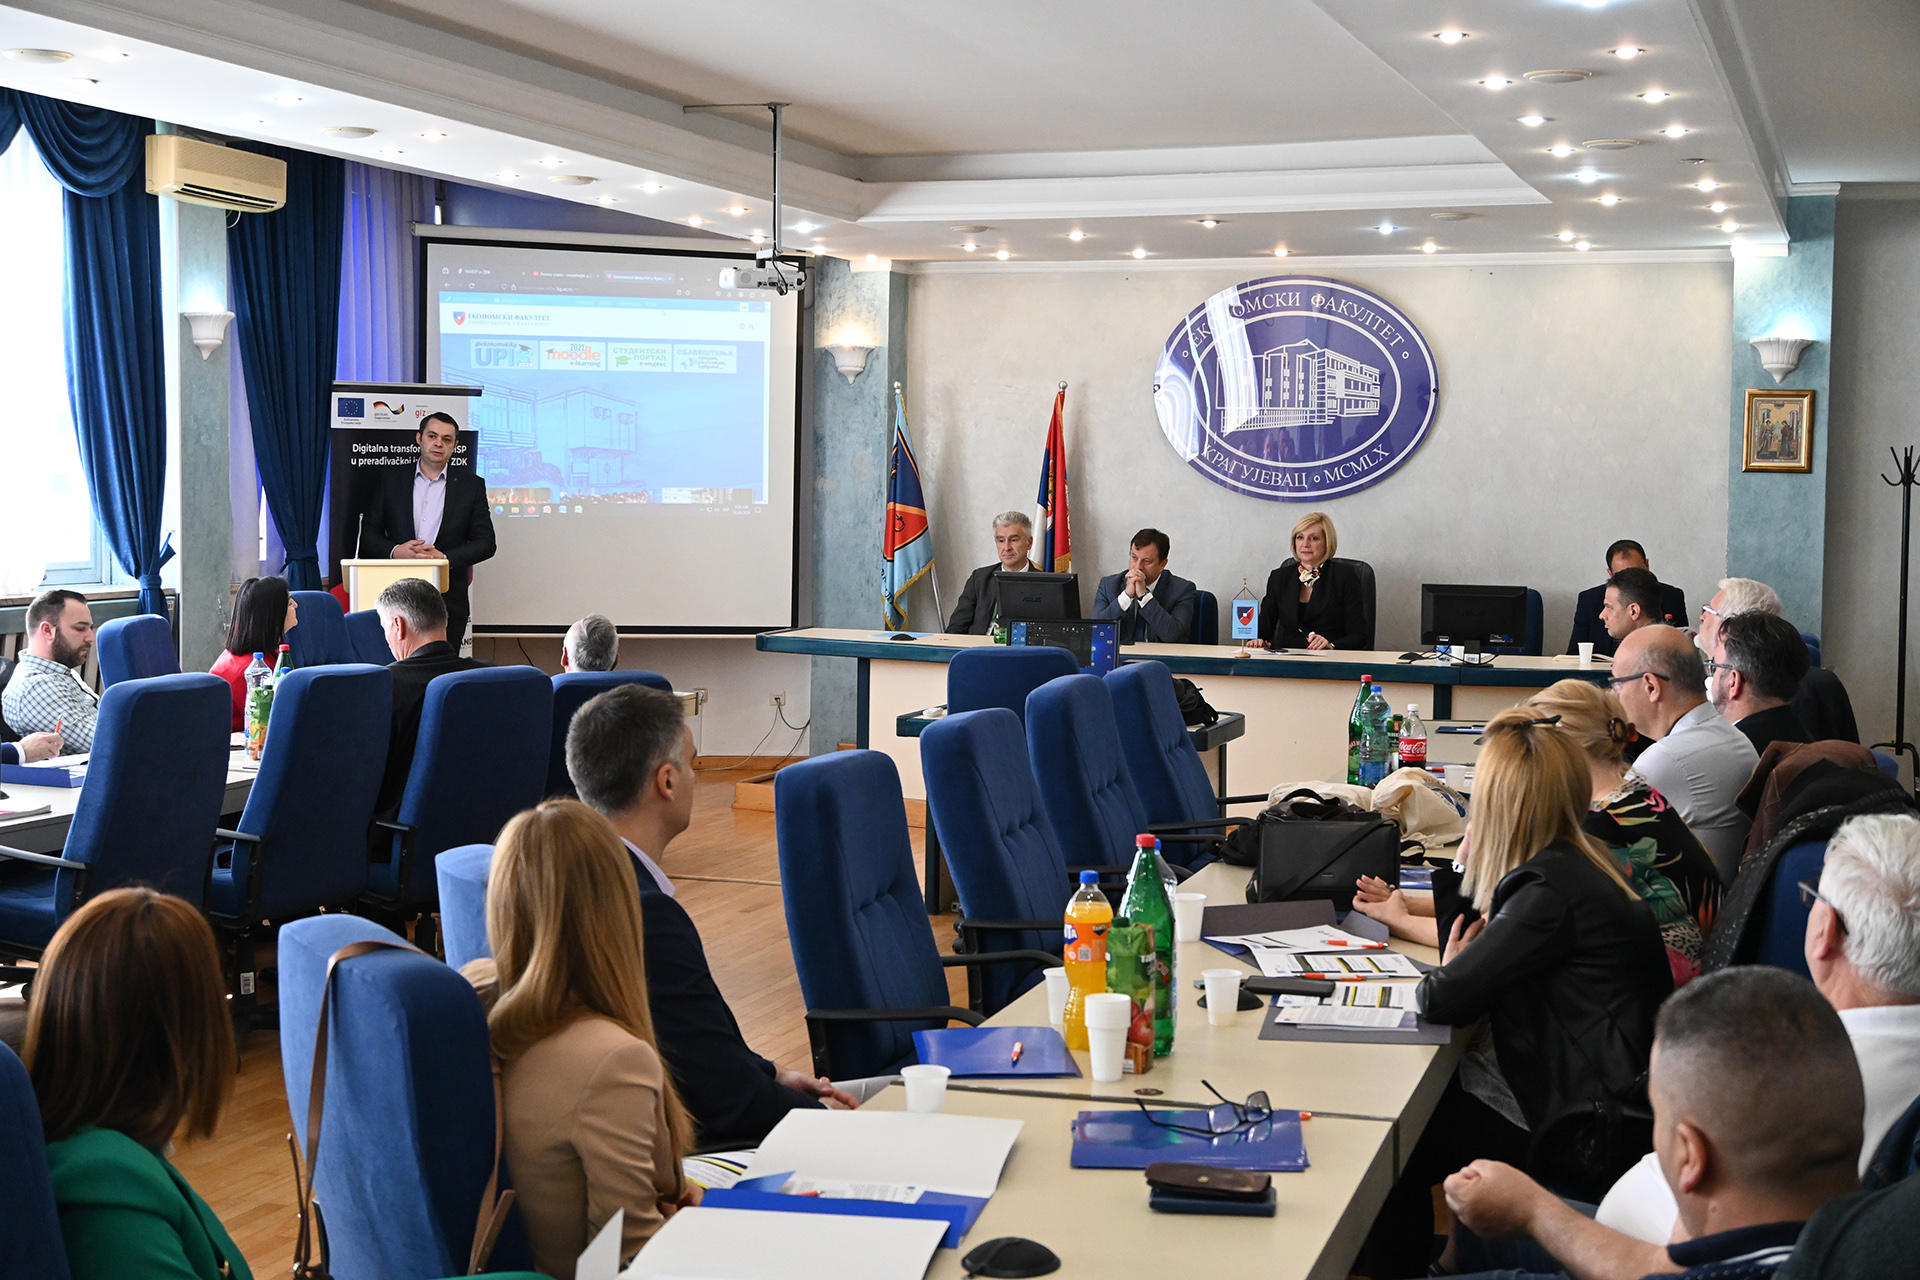 Одржана научно-пословна конференција у суорганизацији са Универзитетом у Зеници